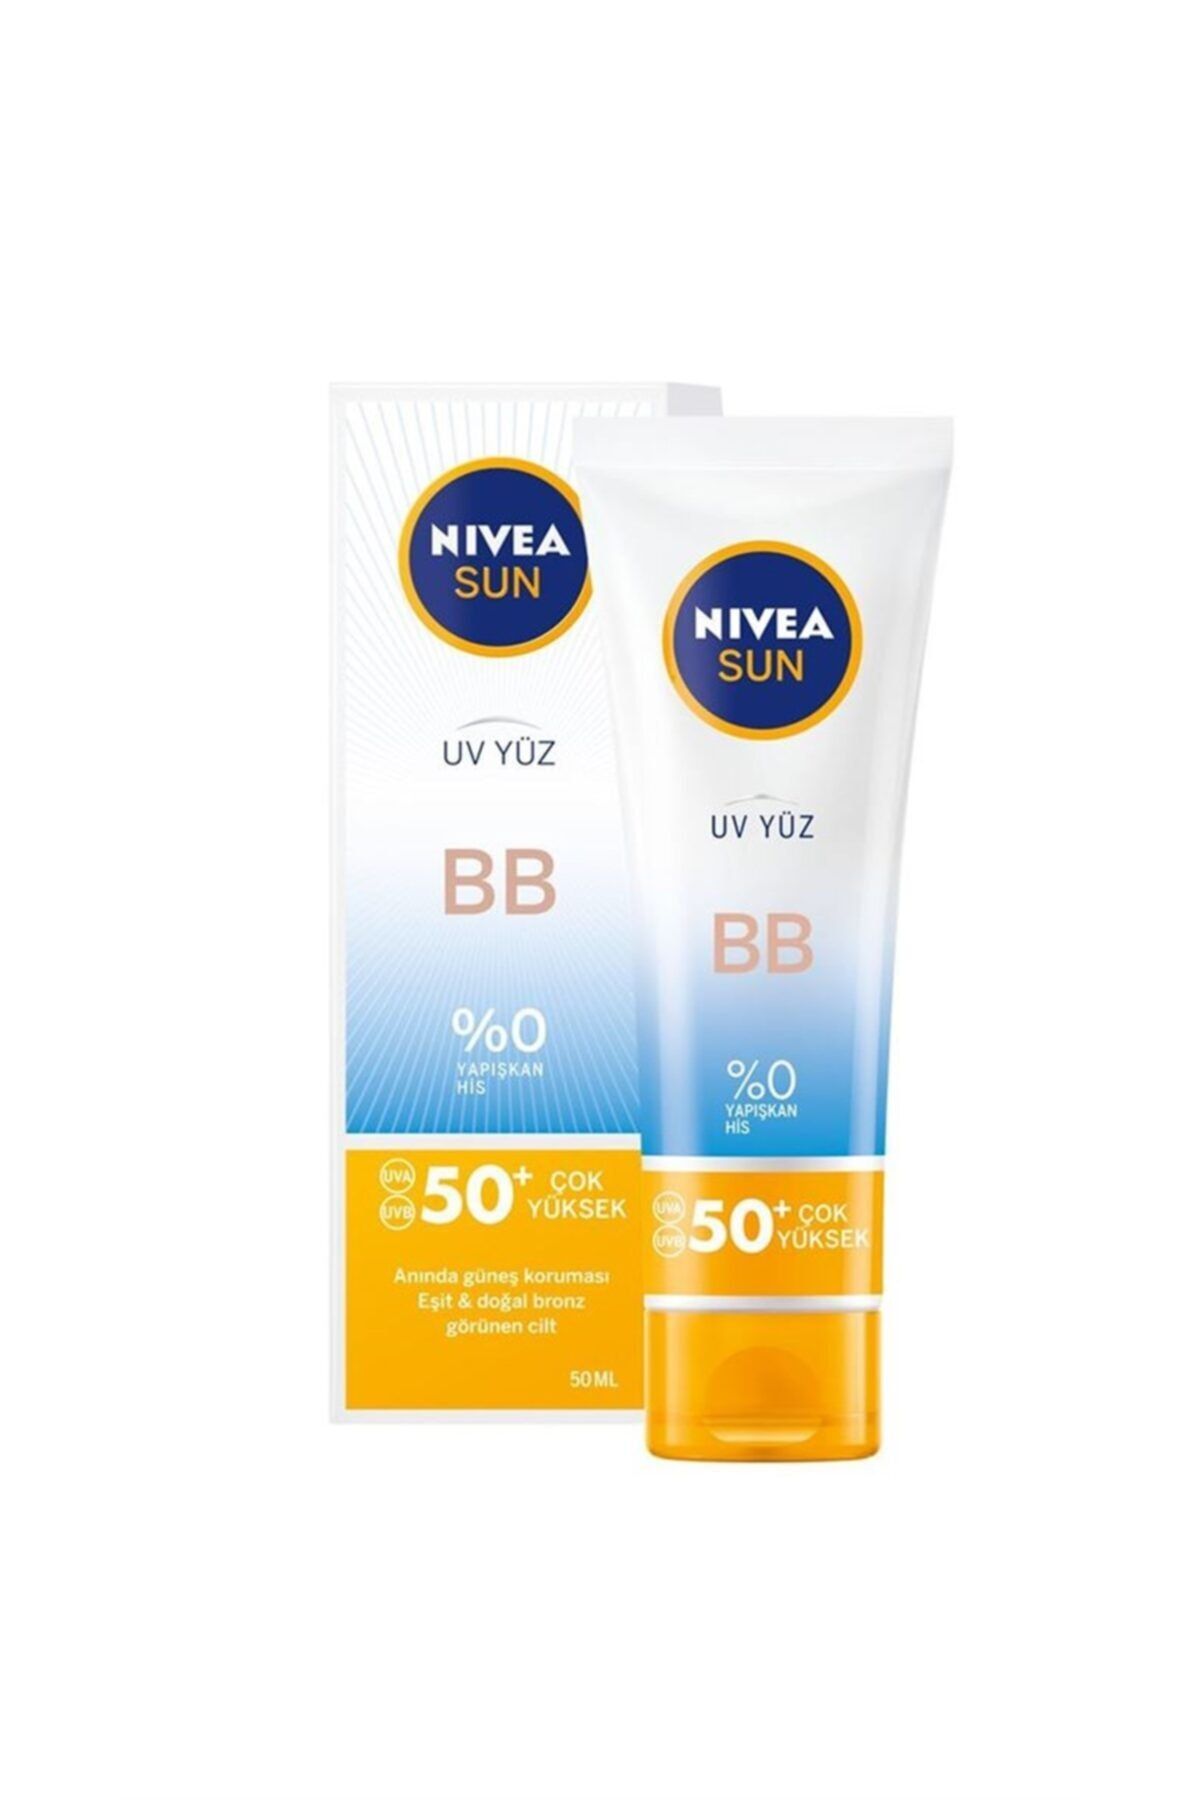 NIVEA Sun Bb Spf 50+ Uv Yüz Kremi 50 ml